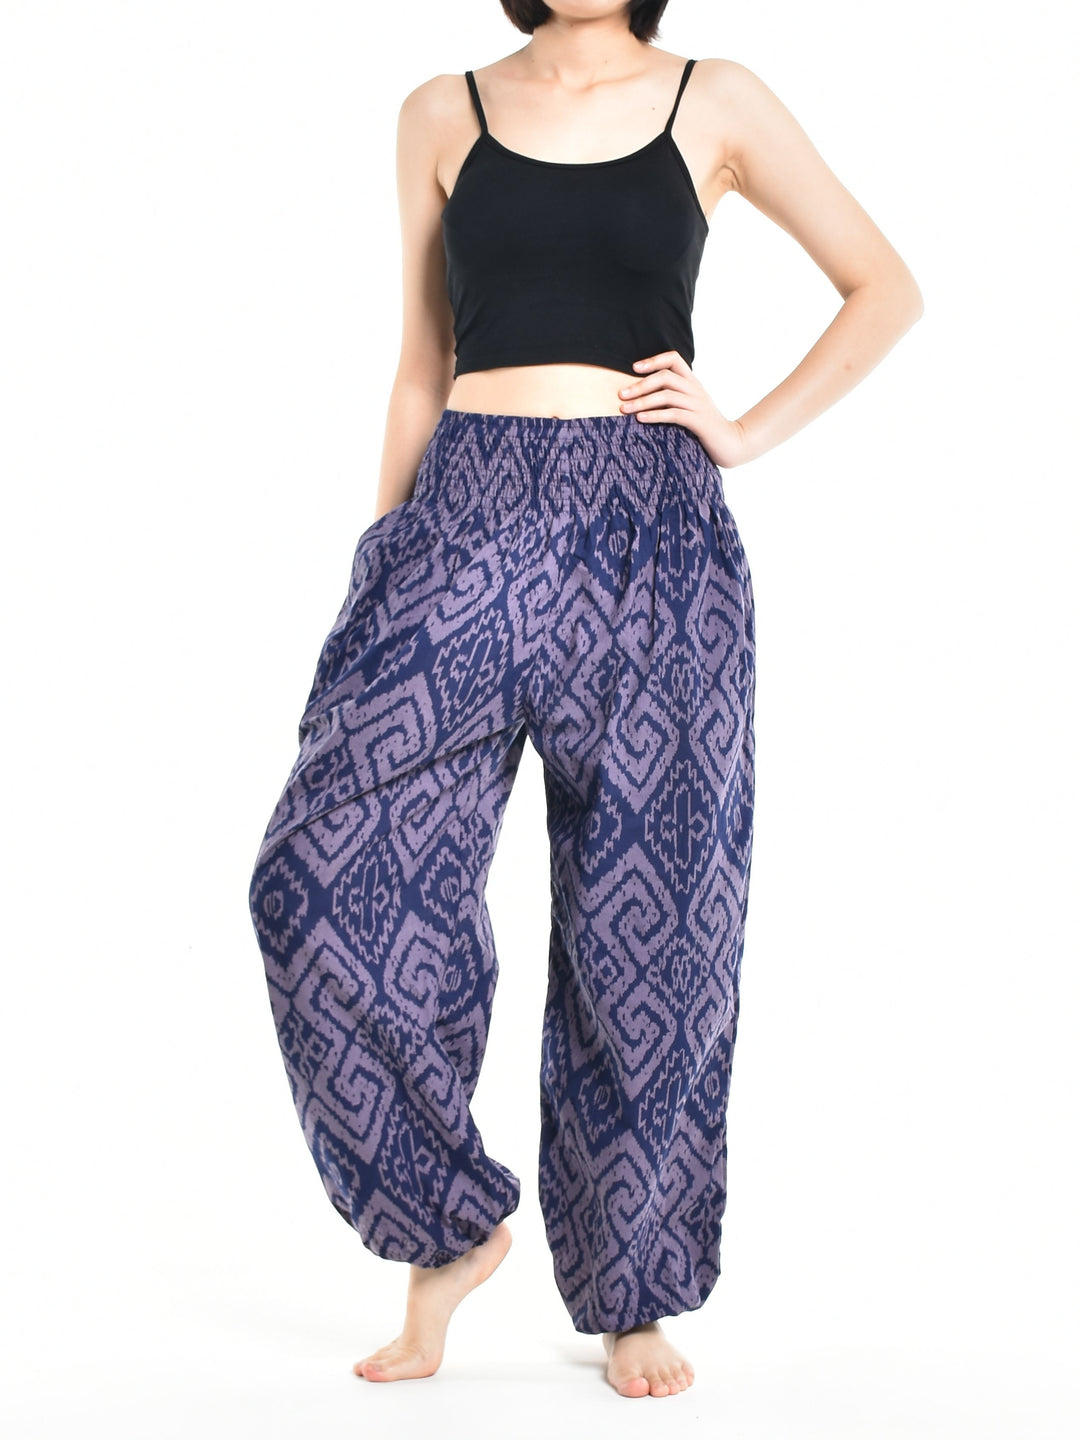 Bohotusk Womens Autumn Purple Blue Maze Cotton Harem Pants S/M to 3XL